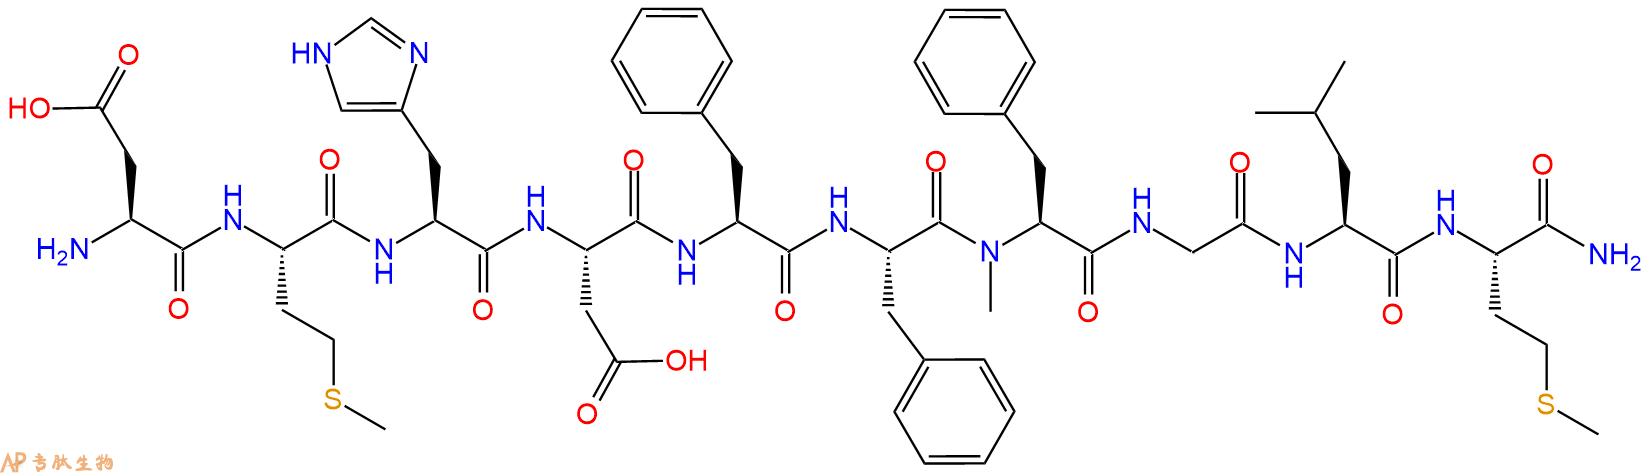 专肽生物产品H-Asp-Met-His-Asp-Phe-Phe-N-Me-Phe-Gly-Leu-Met-NH2110880-53-0